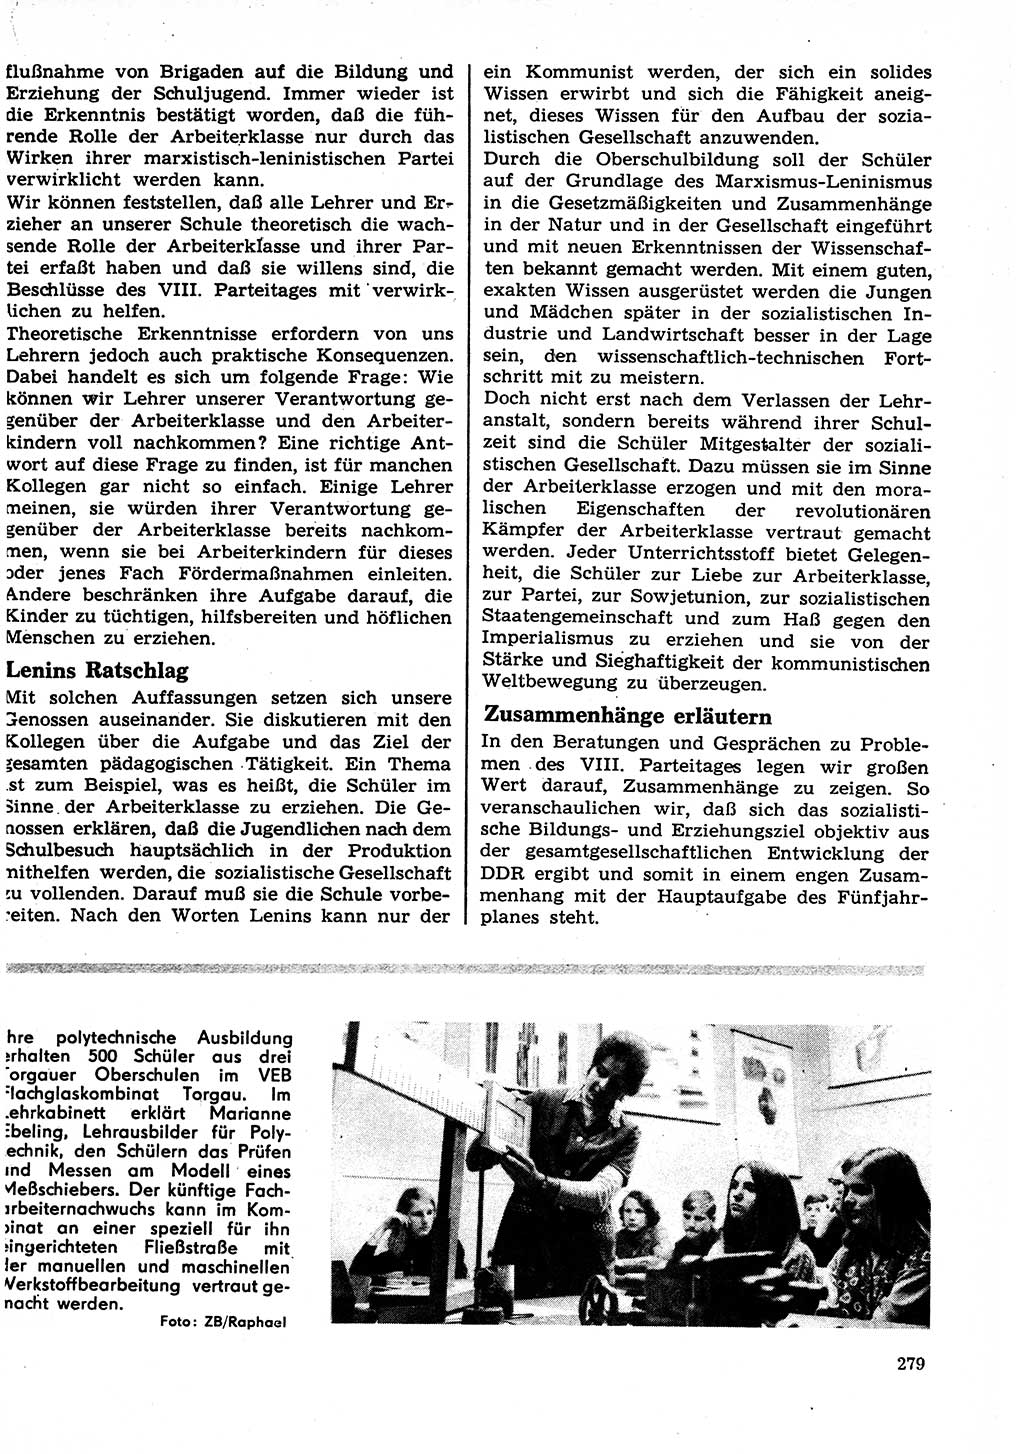 Neuer Weg (NW), Organ des Zentralkomitees (ZK) der SED (Sozialistische Einheitspartei Deutschlands) für Fragen des Parteilebens, 27. Jahrgang [Deutsche Demokratische Republik (DDR)] 1972, Seite 279 (NW ZK SED DDR 1972, S. 279)